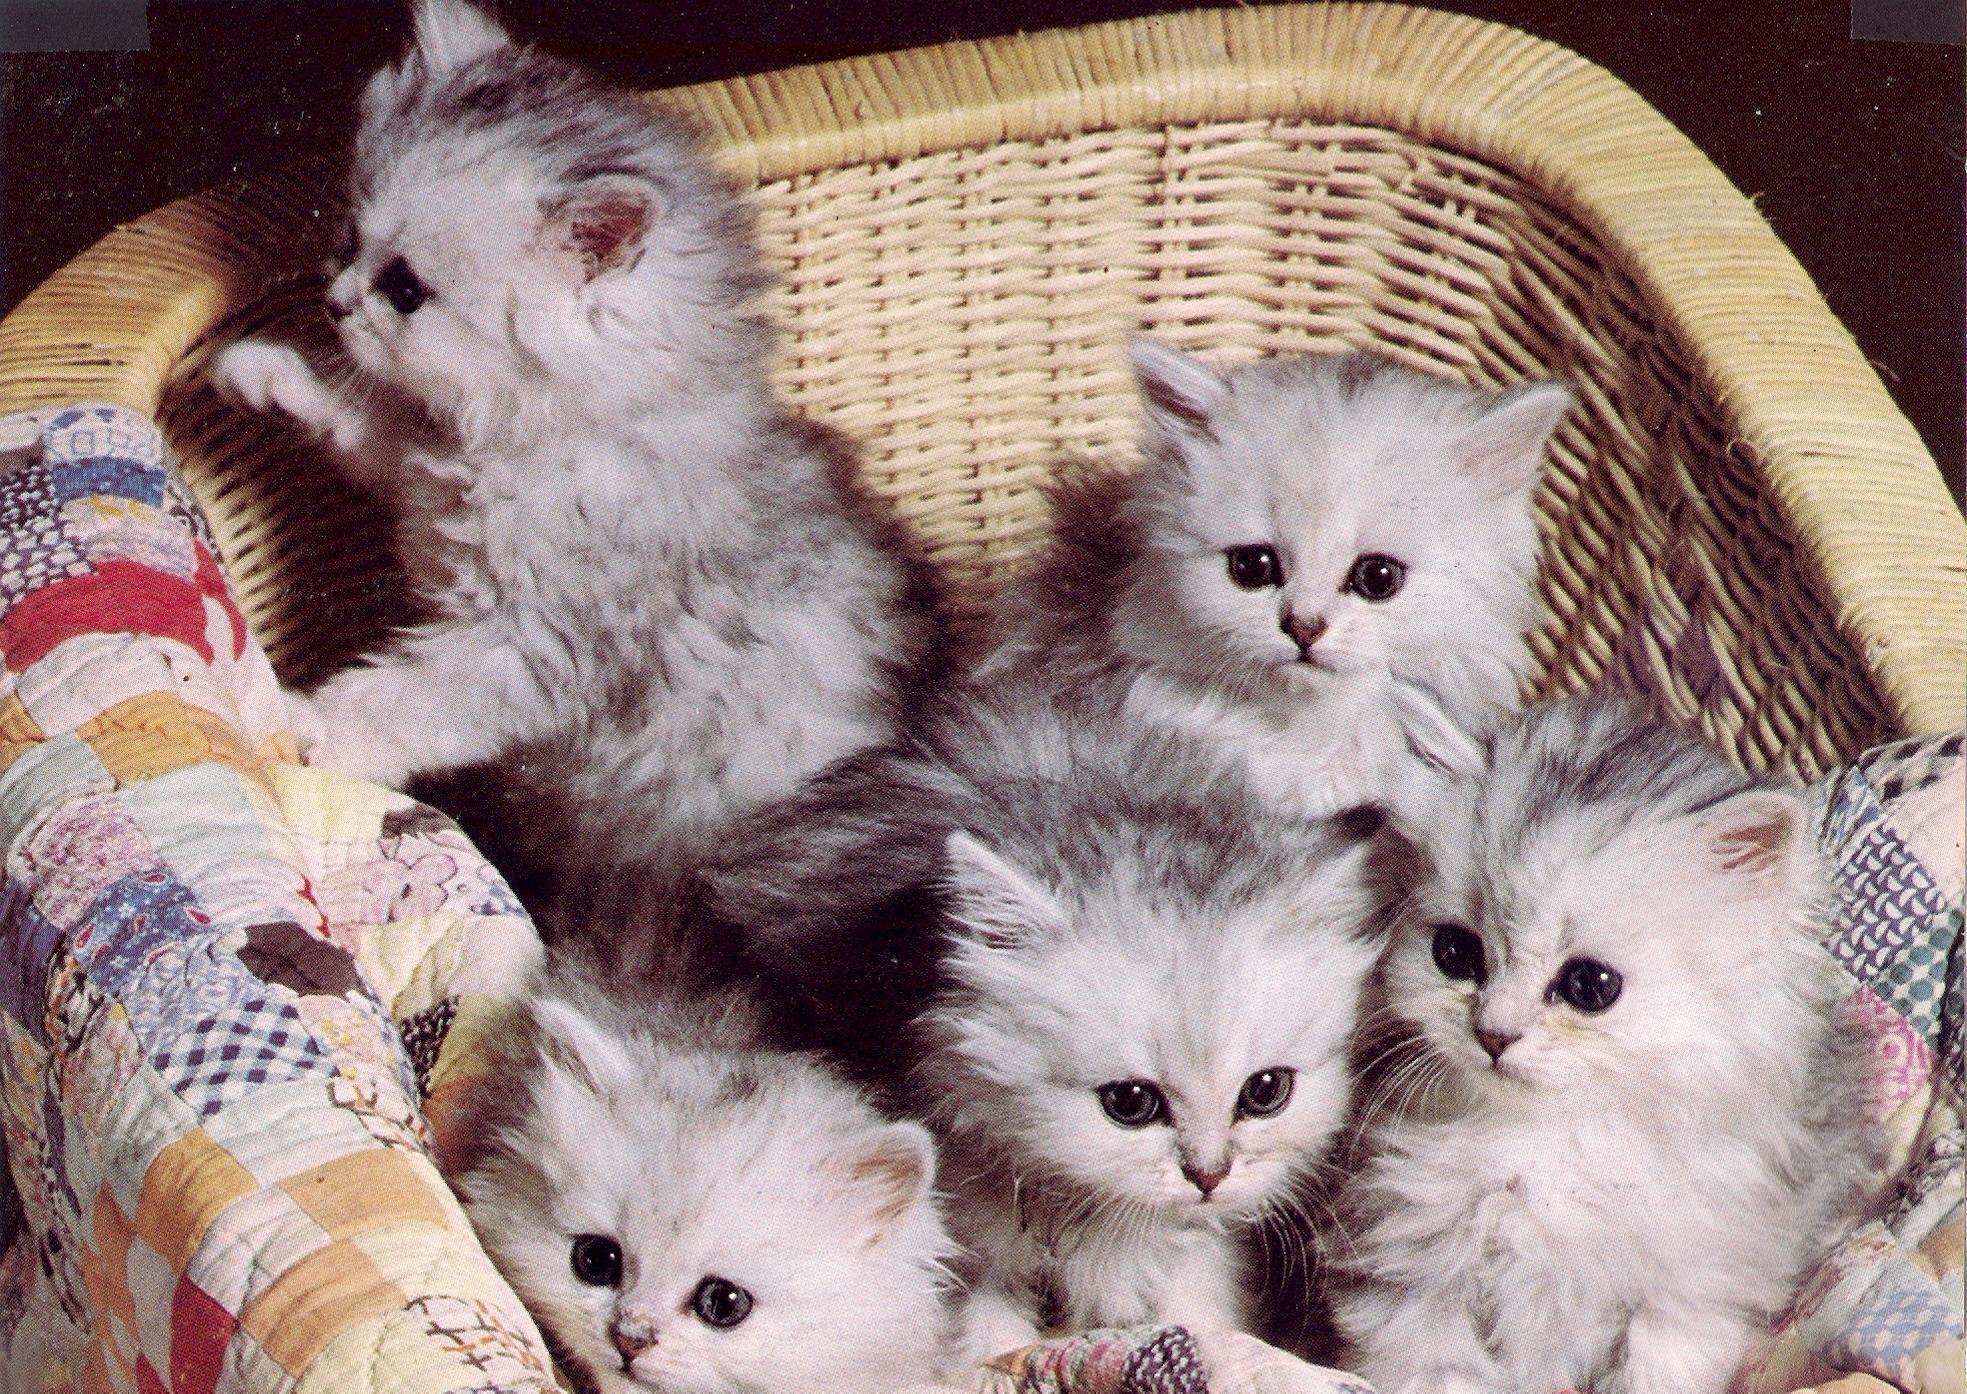 fond d'écran kucing lucu hd,chat,chats de petite à moyenne taille,félidés,chaton,moustaches